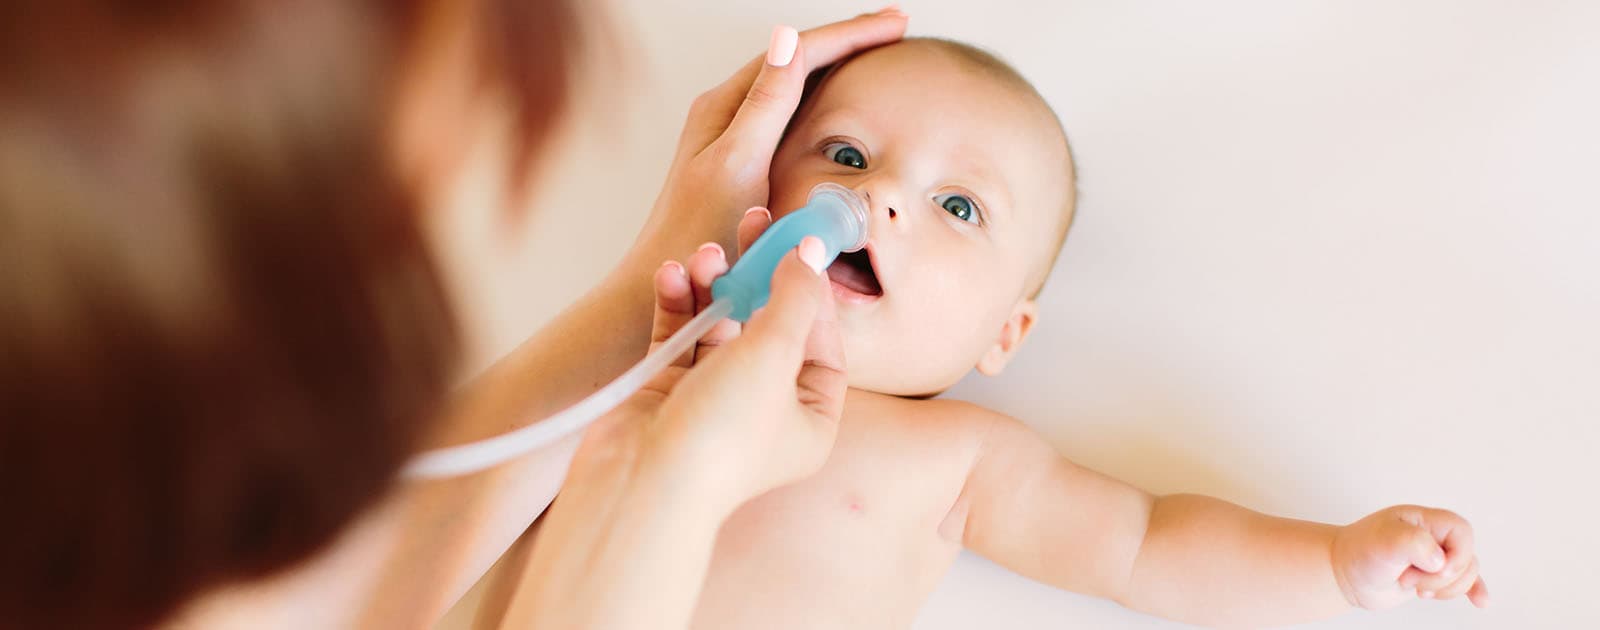 Como fazer lavagem nasal em bebê? Confira o passo a passo